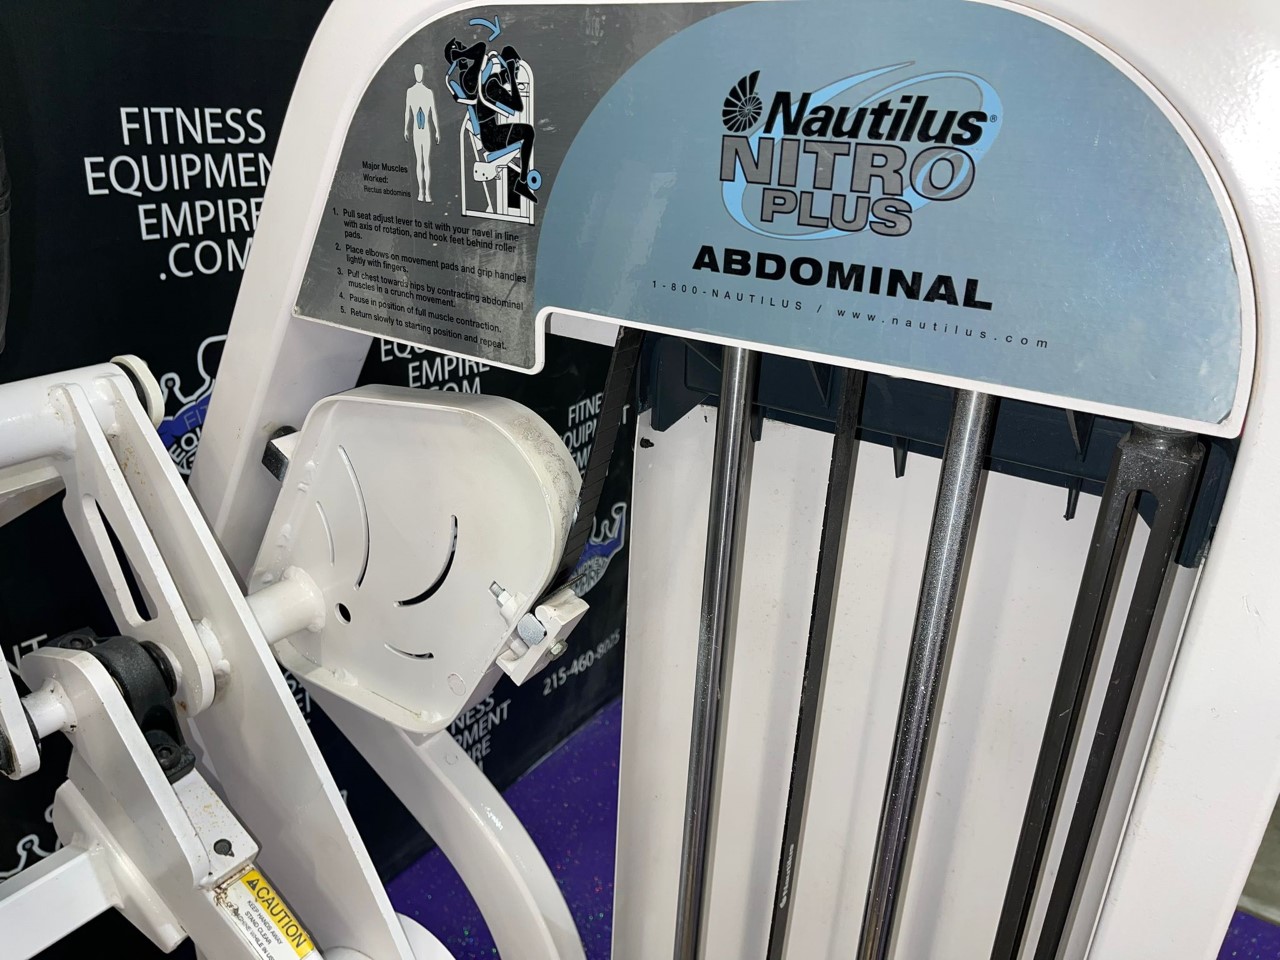 Buy Nautilus Nitro Plus Abdominal Crunch Online Fitness Equipment Empire